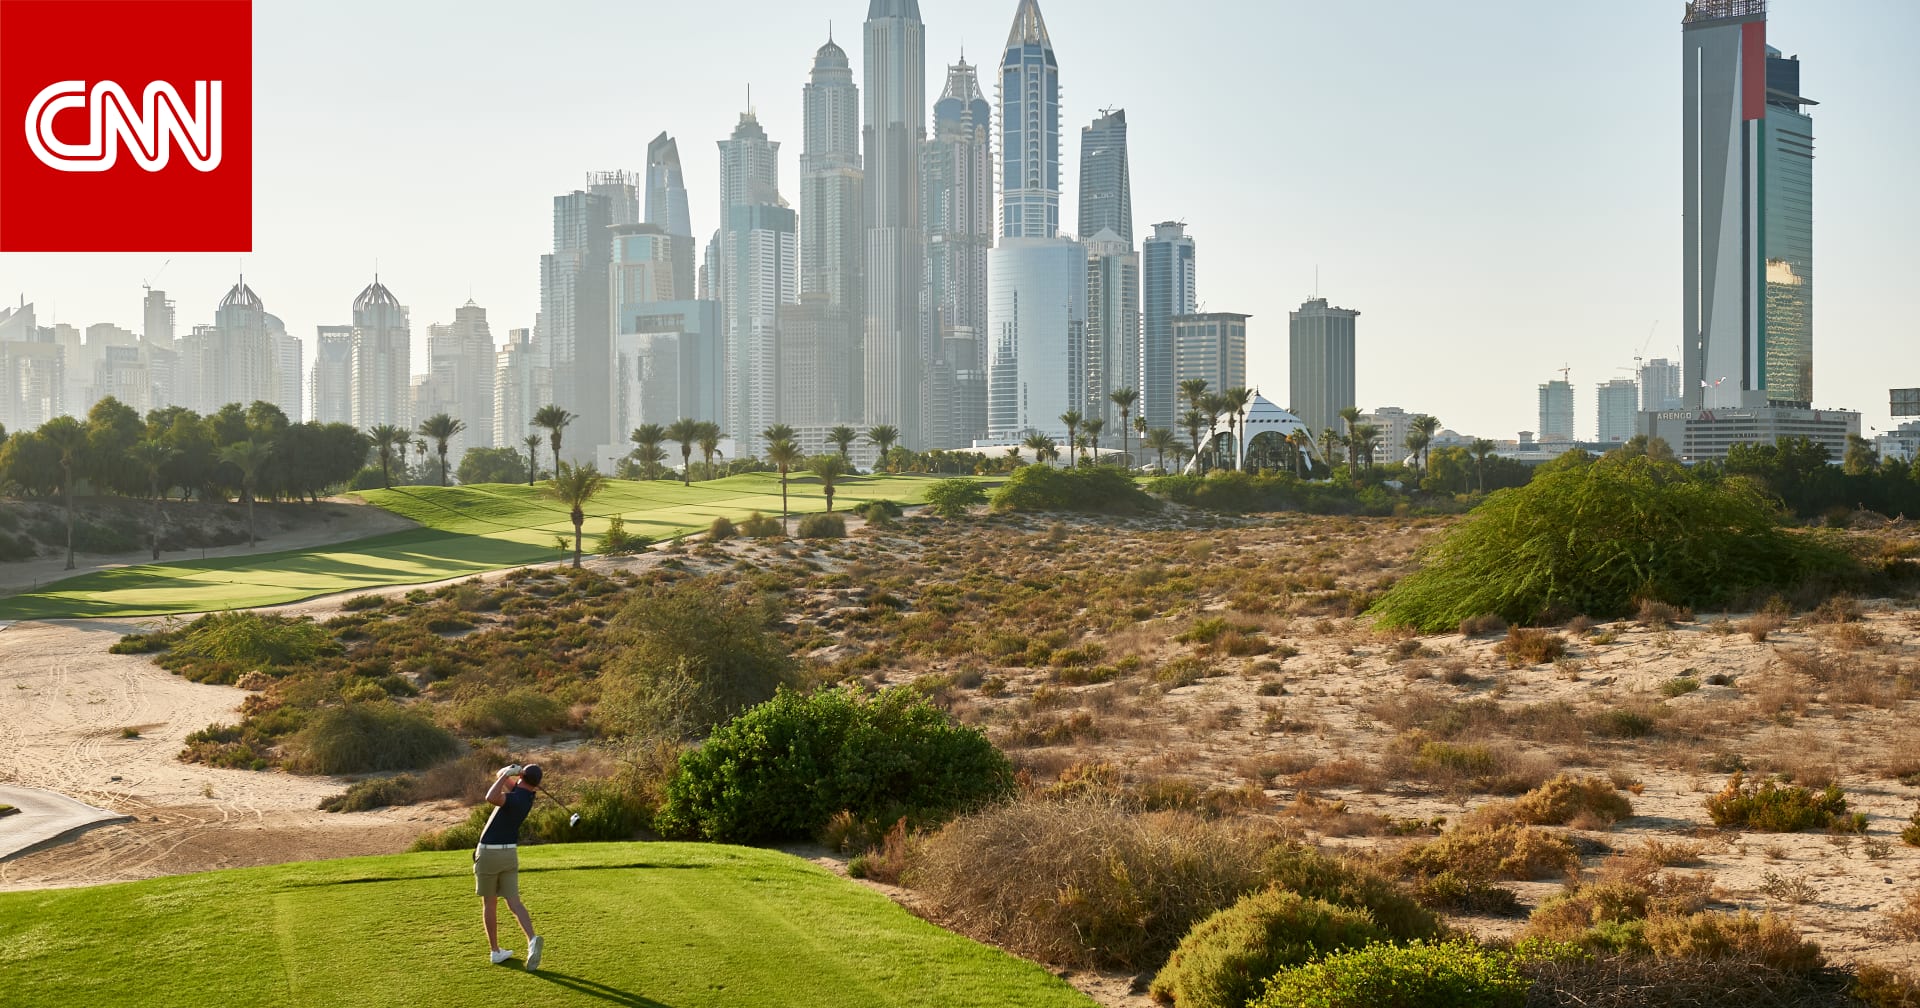 حيث يجتمع محترفو الغولف.. تعرف إلى أول ملعب غولف عشبي بالشرق الأوسط في دبي